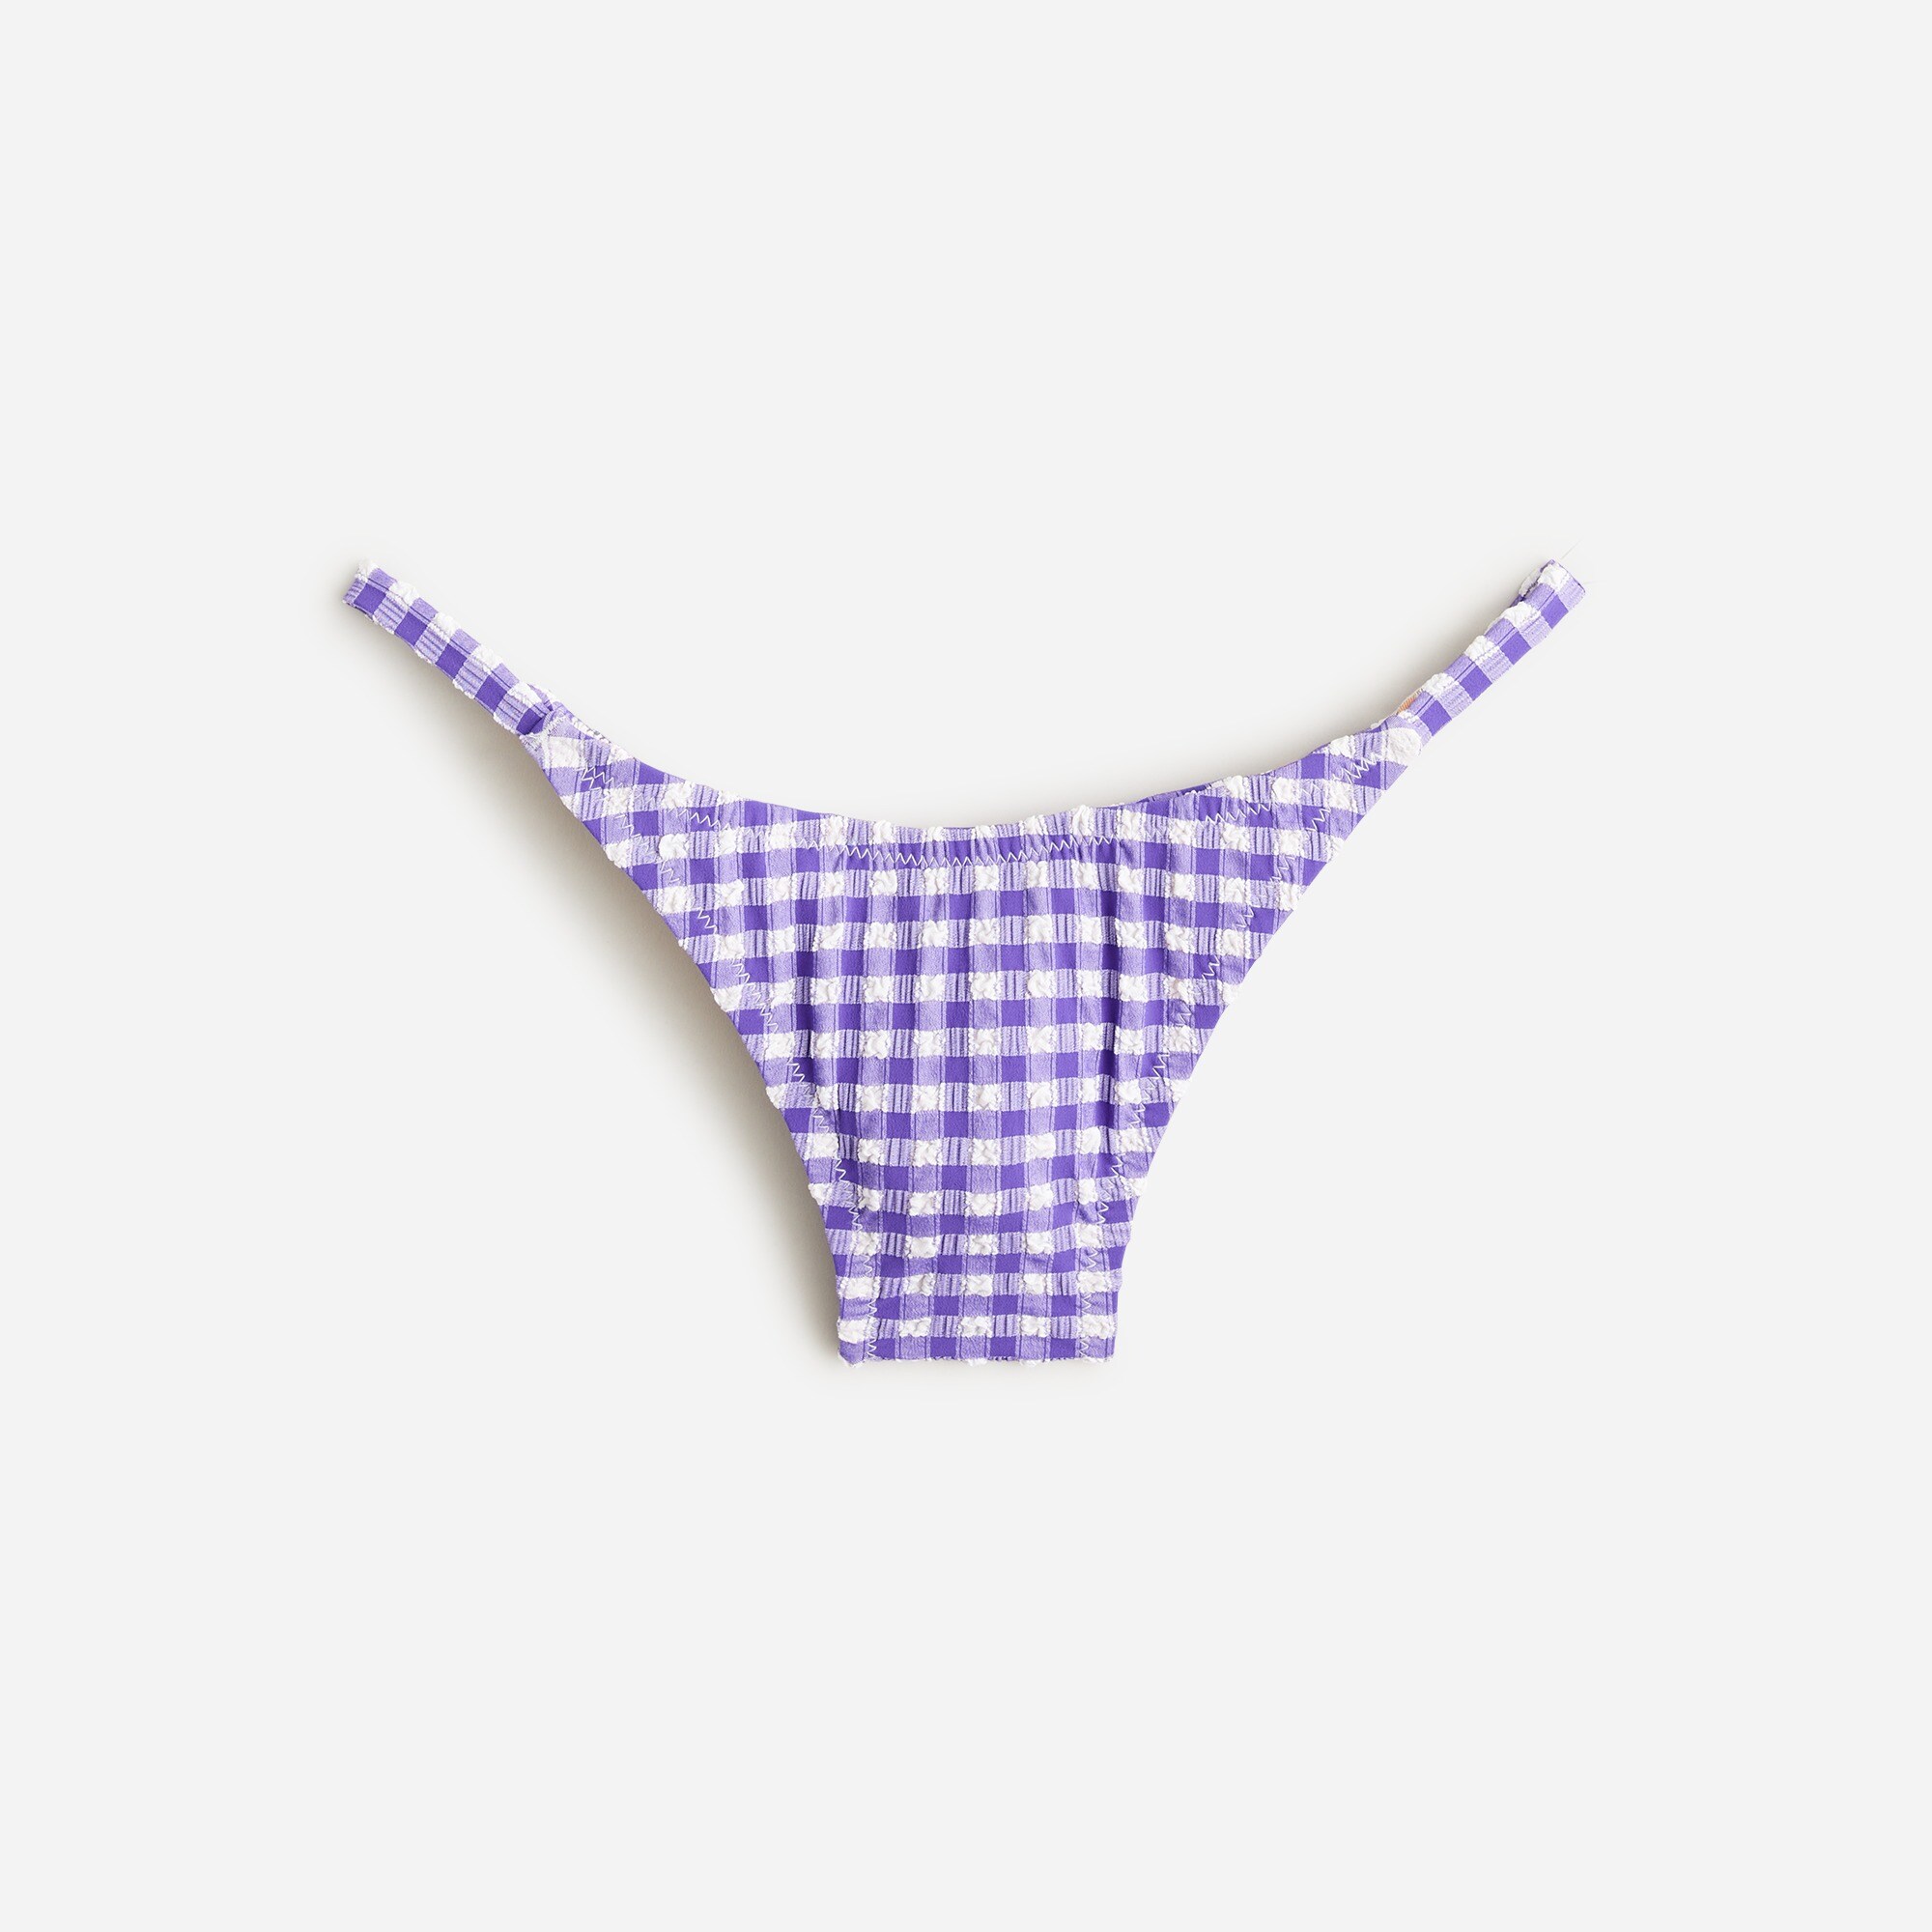  '90s no-tie string bikini bottom in gingham